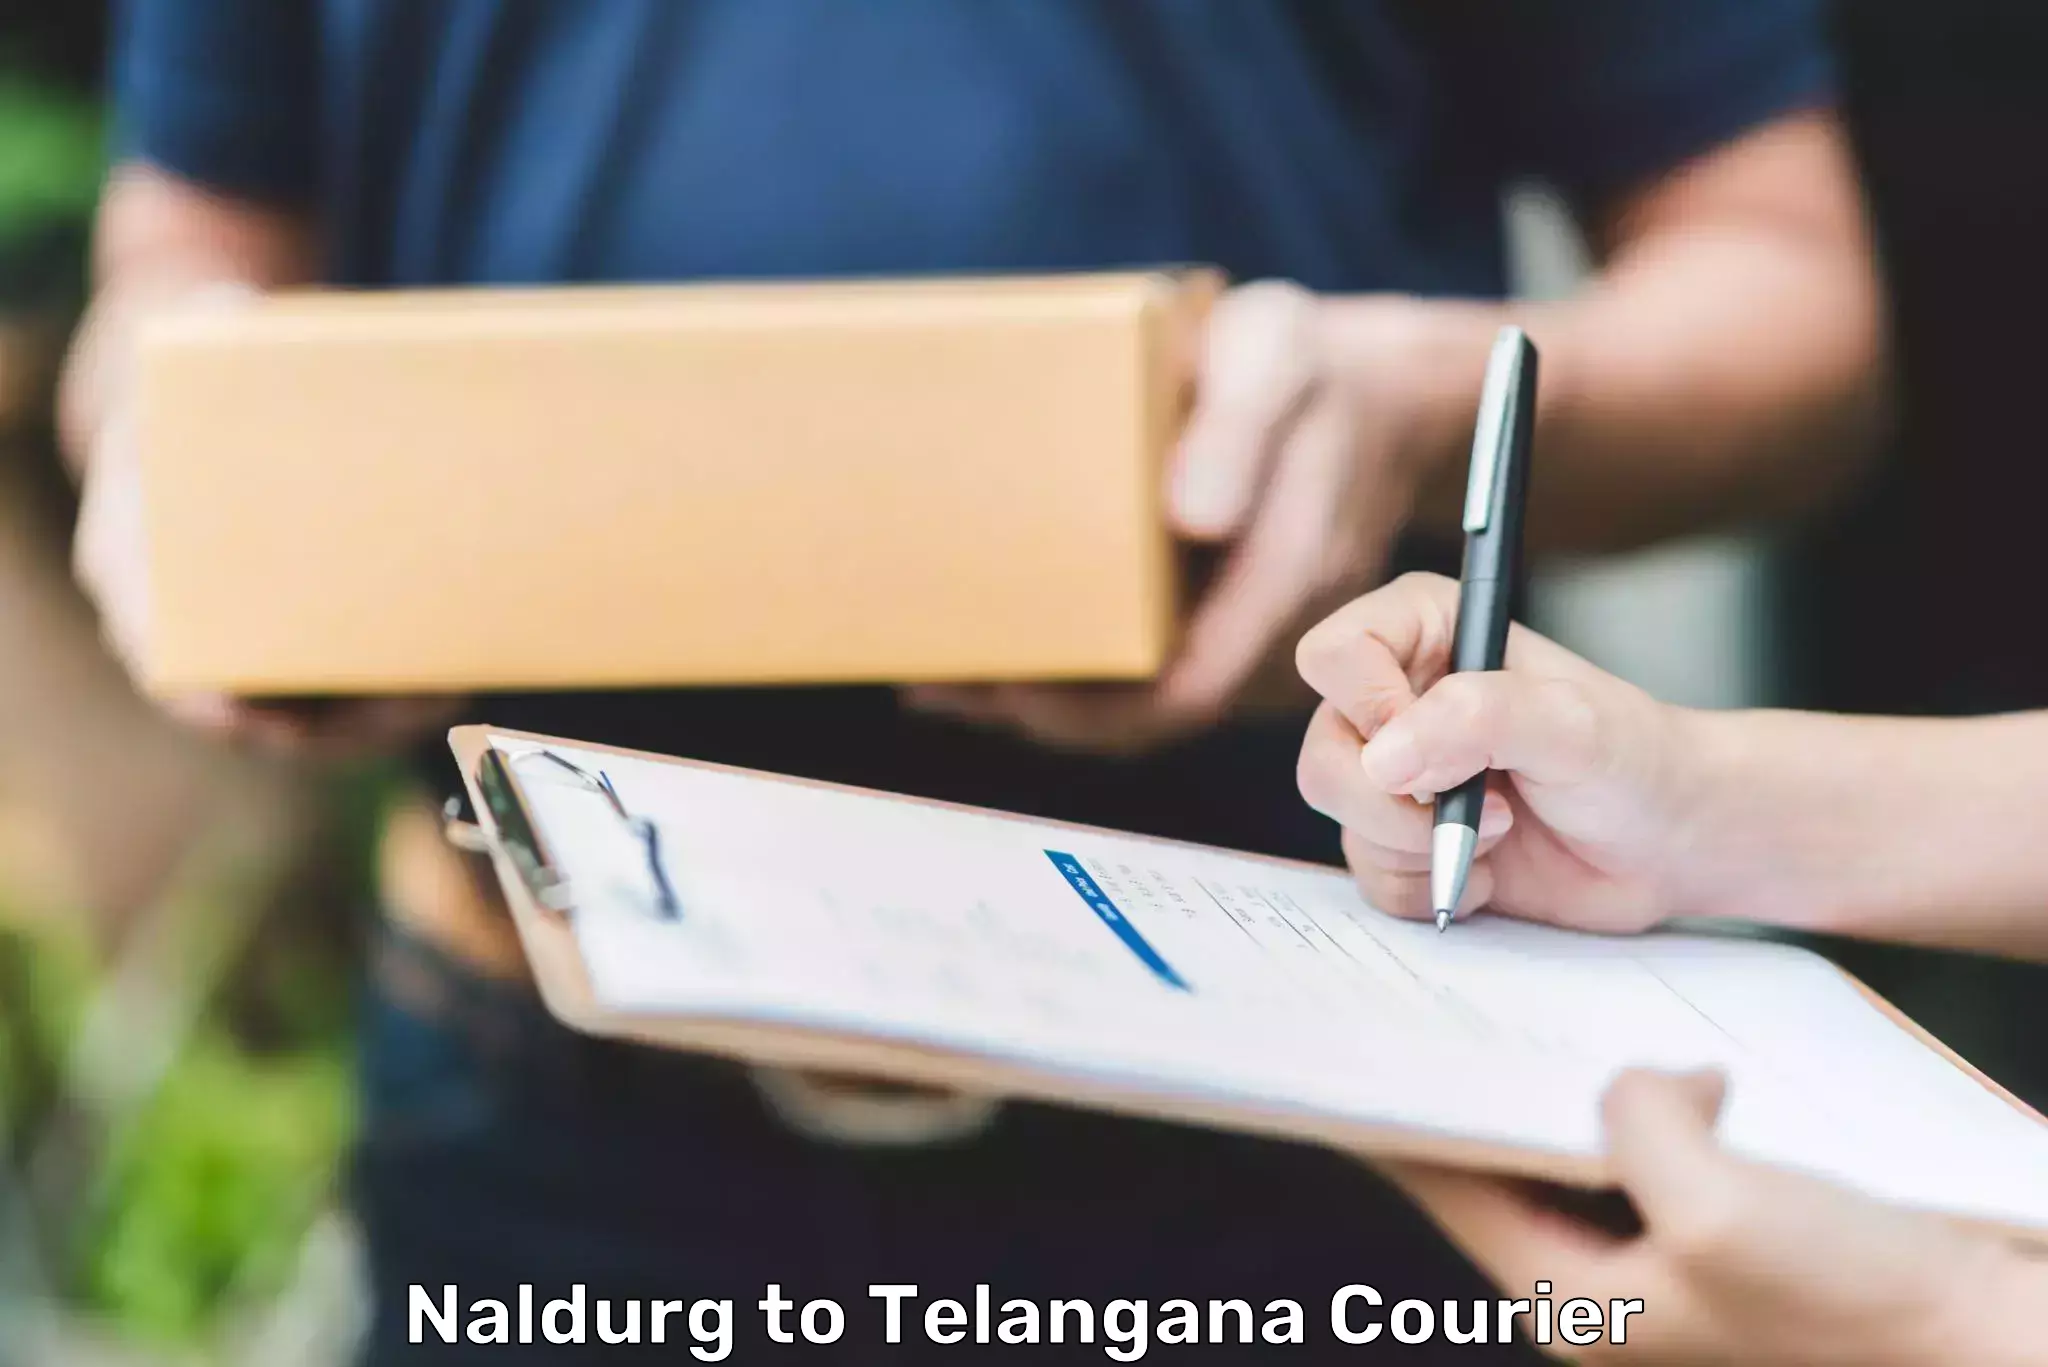 Logistics service provider Naldurg to Sikanderguda